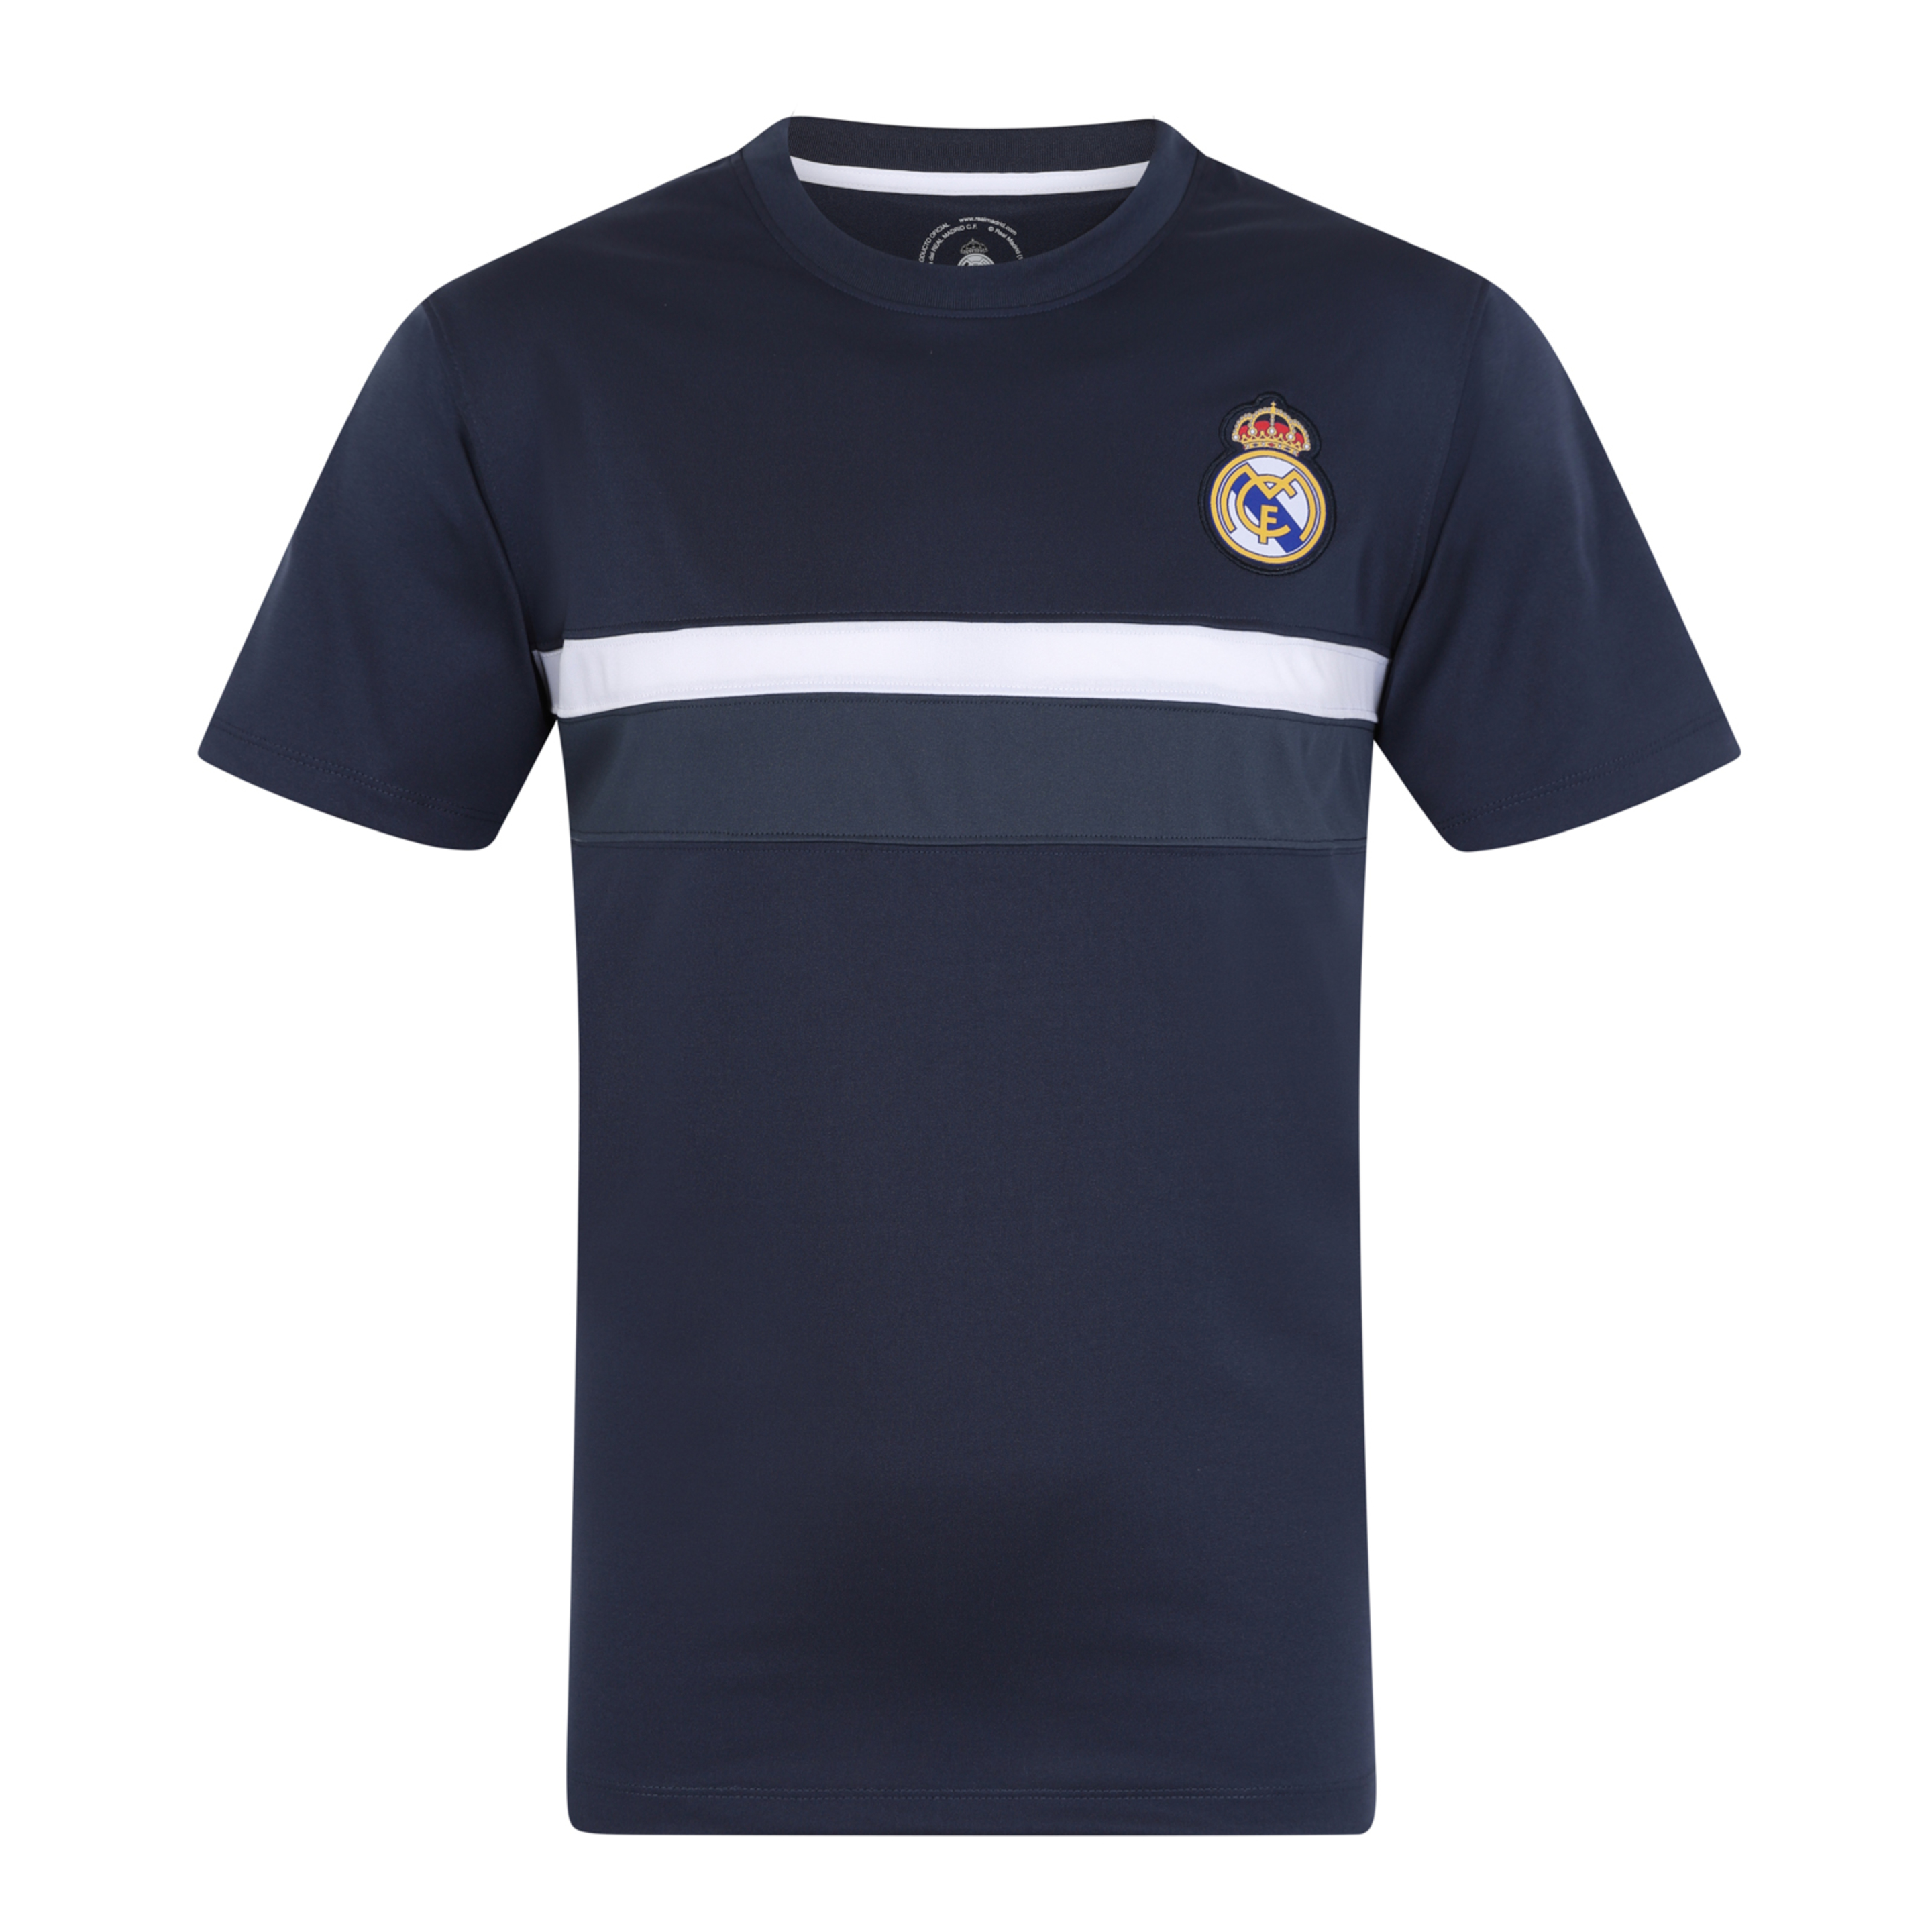 Real Madrid - Camiseta Oficial Para Entrenamiento - Poliéster - Blanco - Franja Negra - Grande